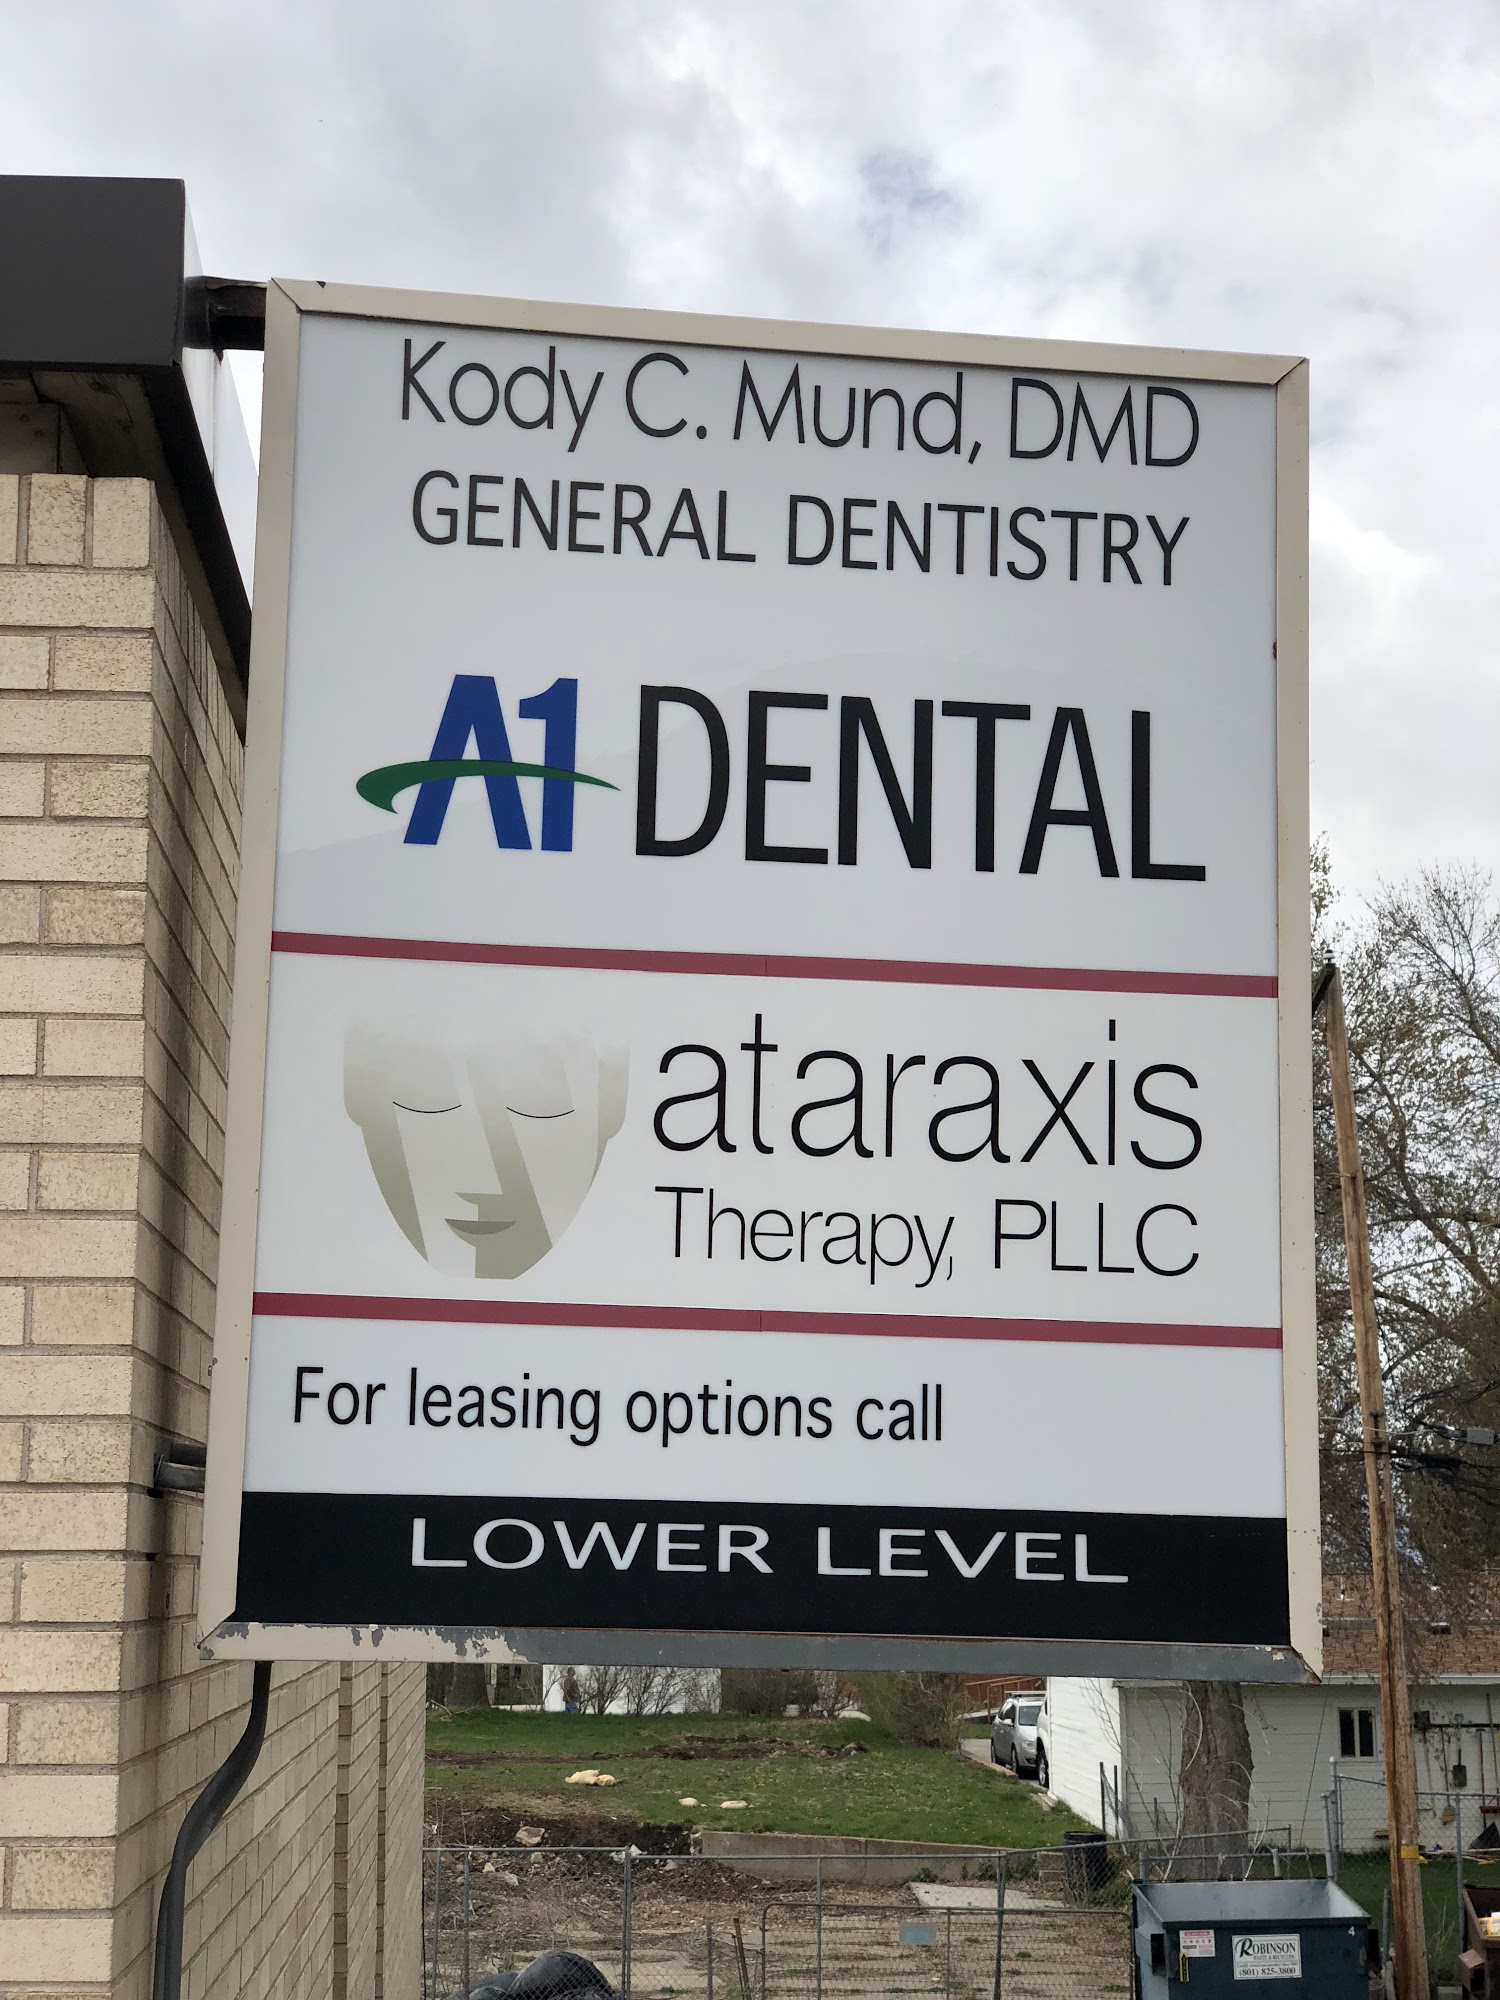 A-1 Dental